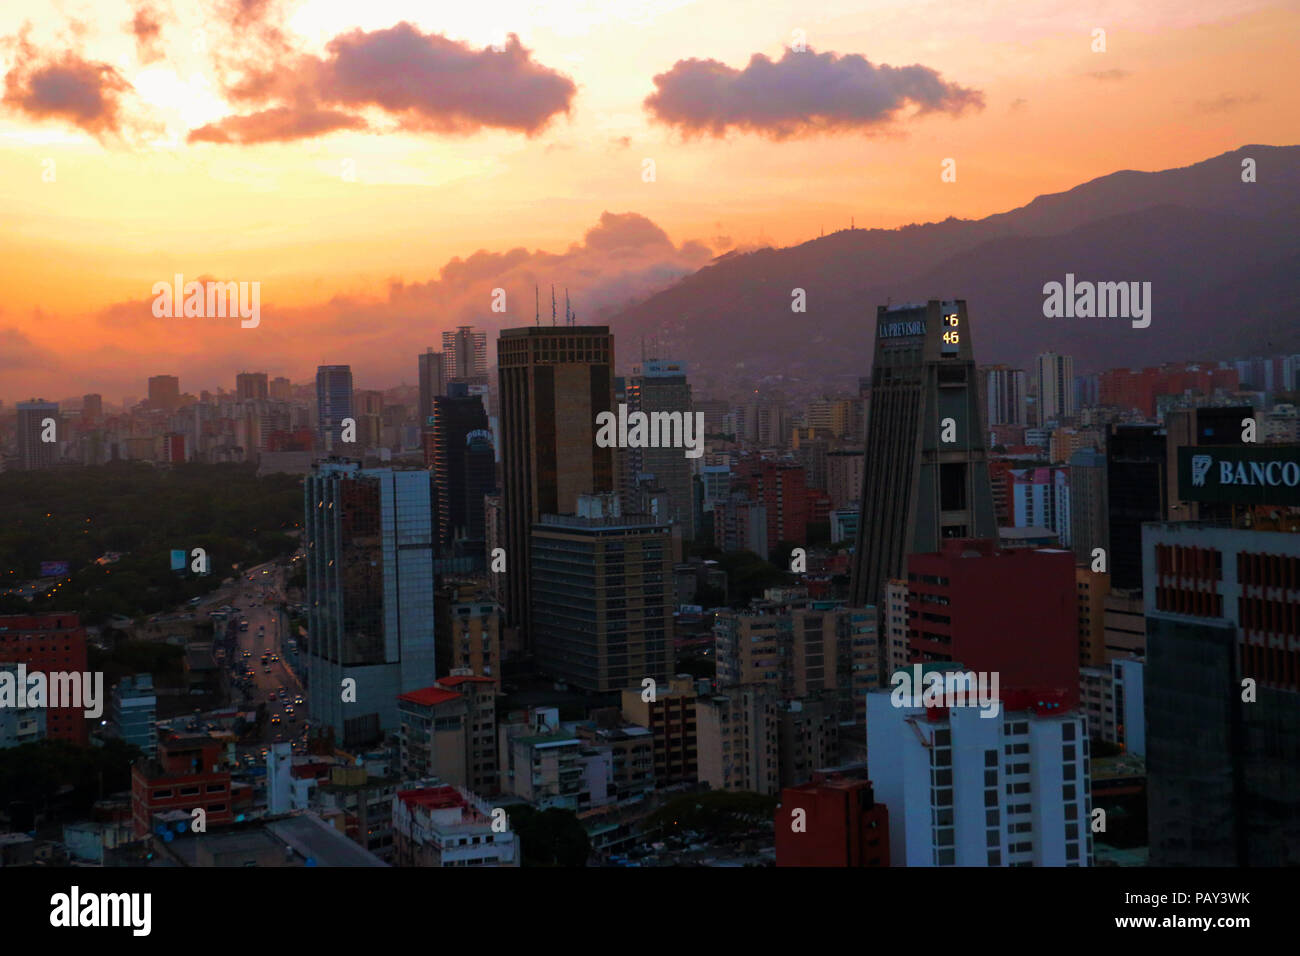 Sabana Grande Caracas Venezuela, Business District in the Metropolitan Area. Vicente Quintero and Marcos Kirschstein Stock Photo